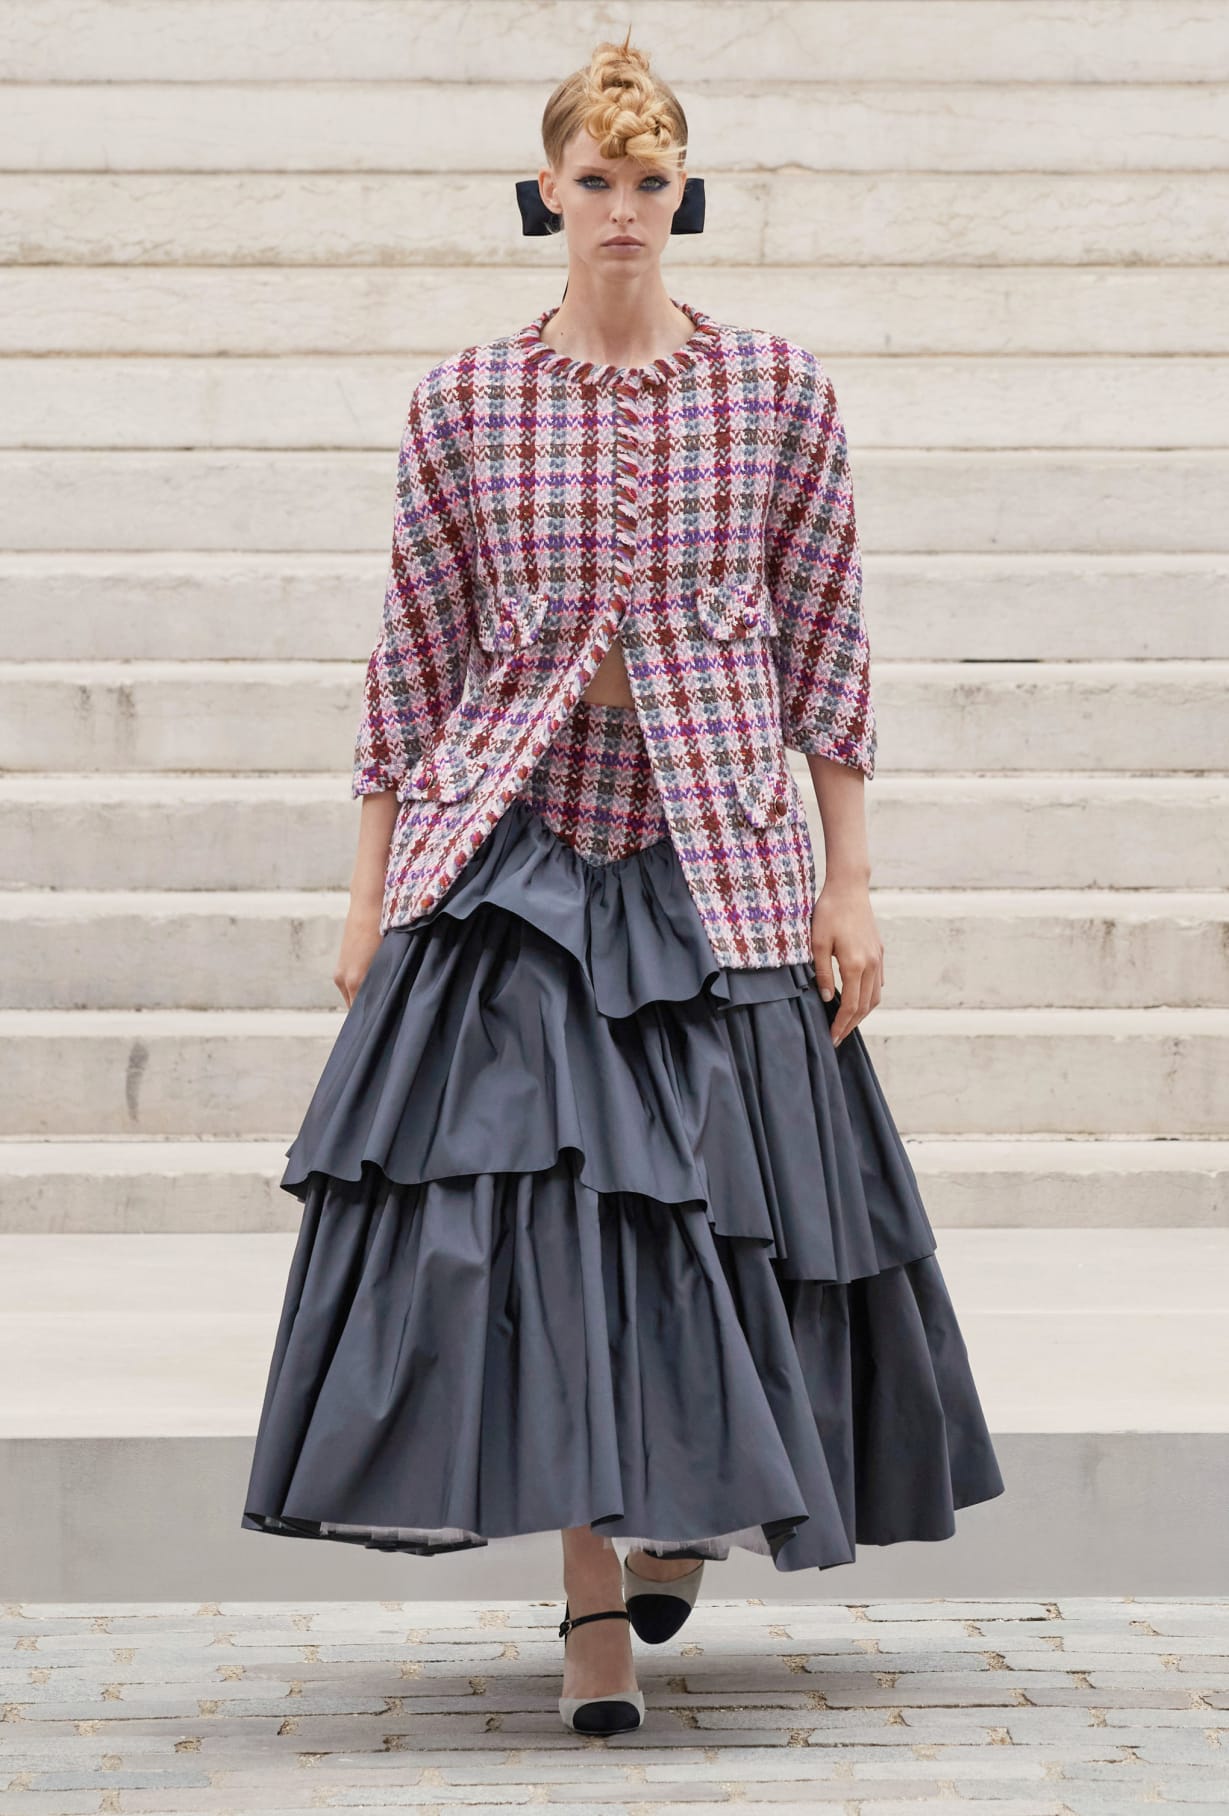 Chanel Haute Couture 2021: Sự tối giản của sàn diễn để tôn vinh trang phục  - Ảnh 13